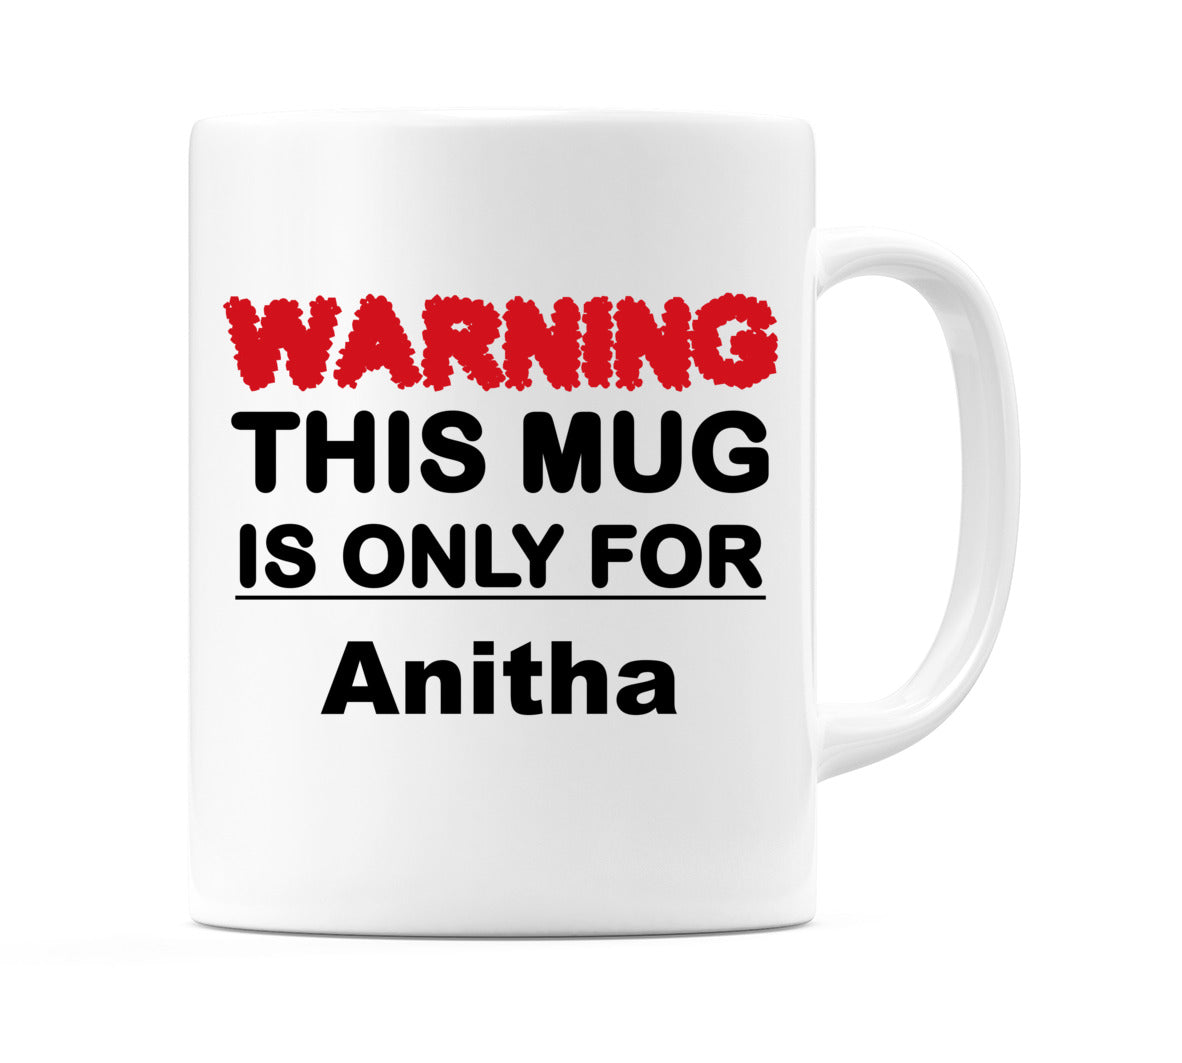 Warning This Mug is ONLY for Anitha Mug